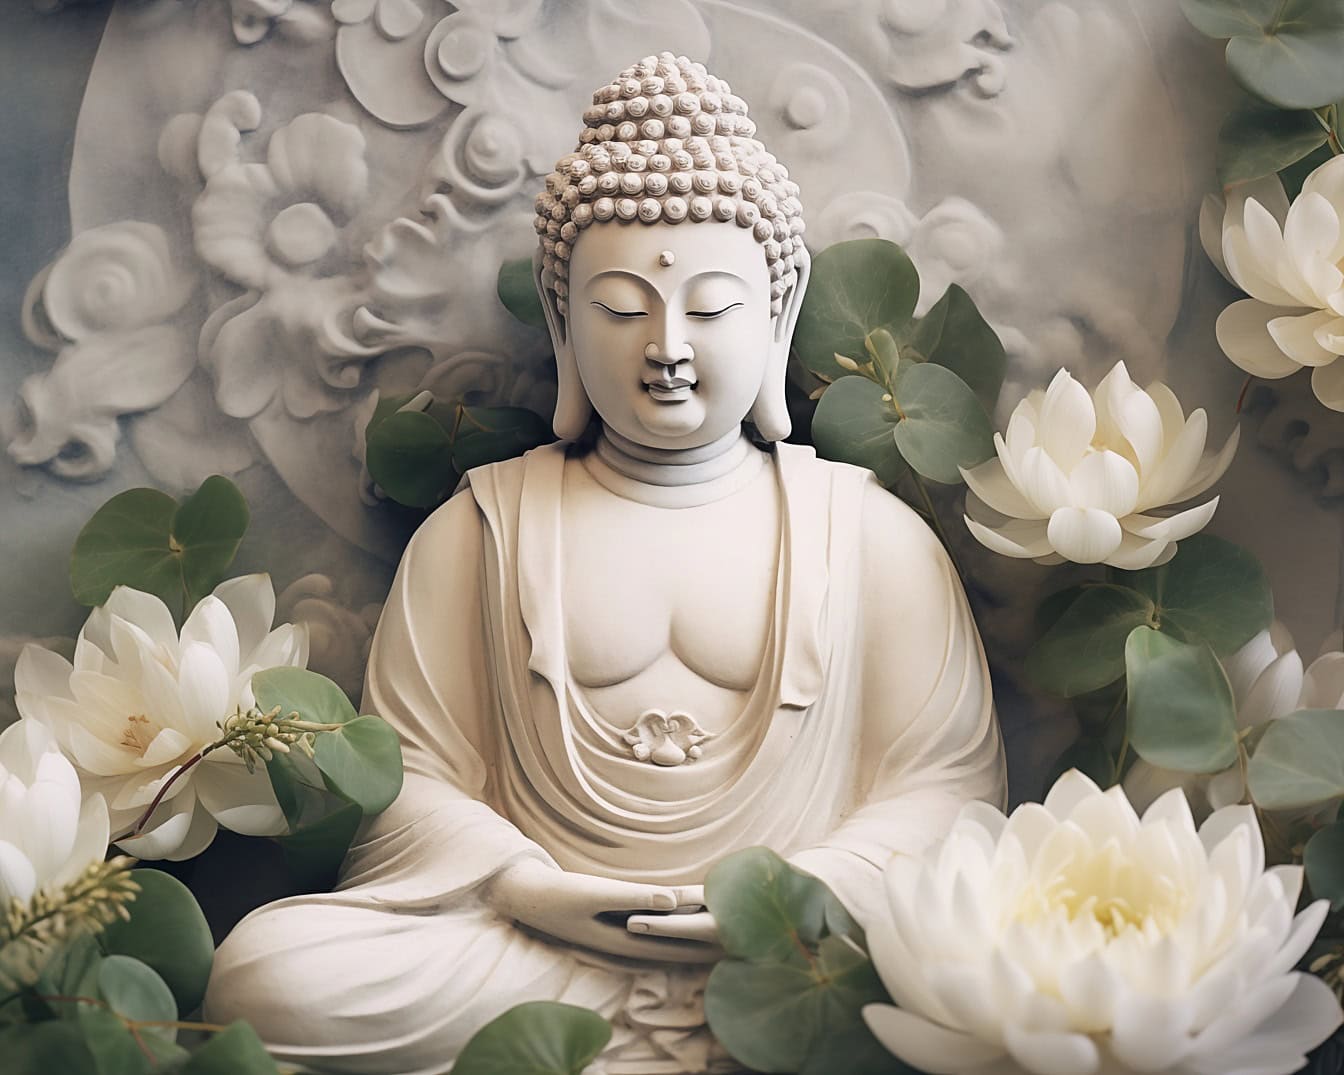 超验冥想中的佛像被莲花包围，将禅宗描绘成一种精神哲学